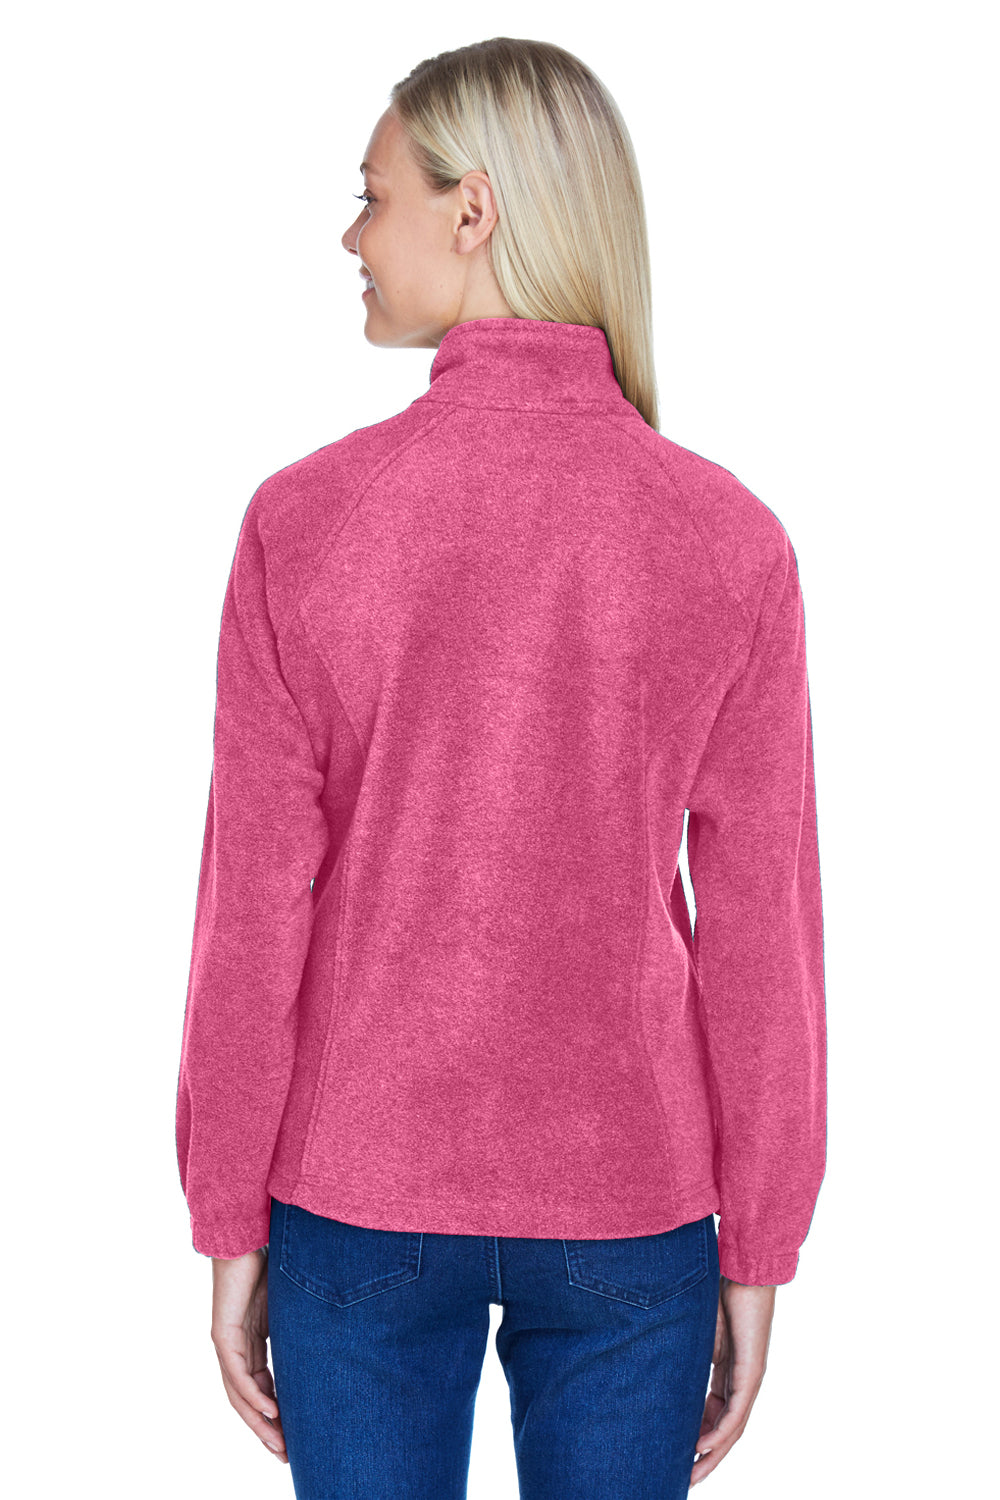 Harriton M990W Womens Full Zip Fleece Jacket Charity Pink Back